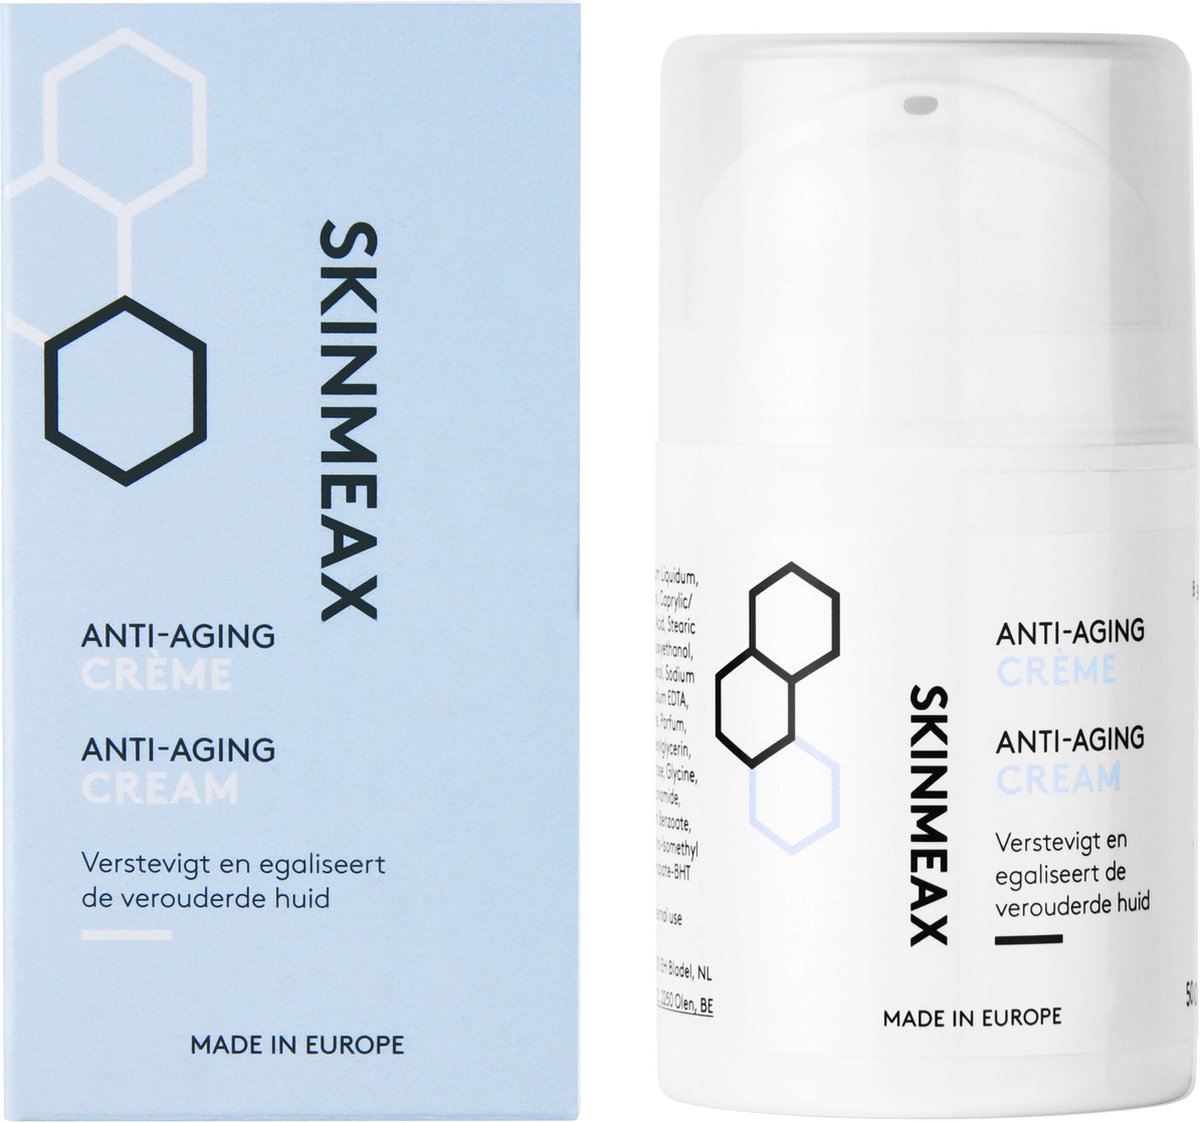 Skinmeax Anti-Aging Crème - Gezichtsverzorging - Vermindert de kenmerken van huidveroudering - 50ml